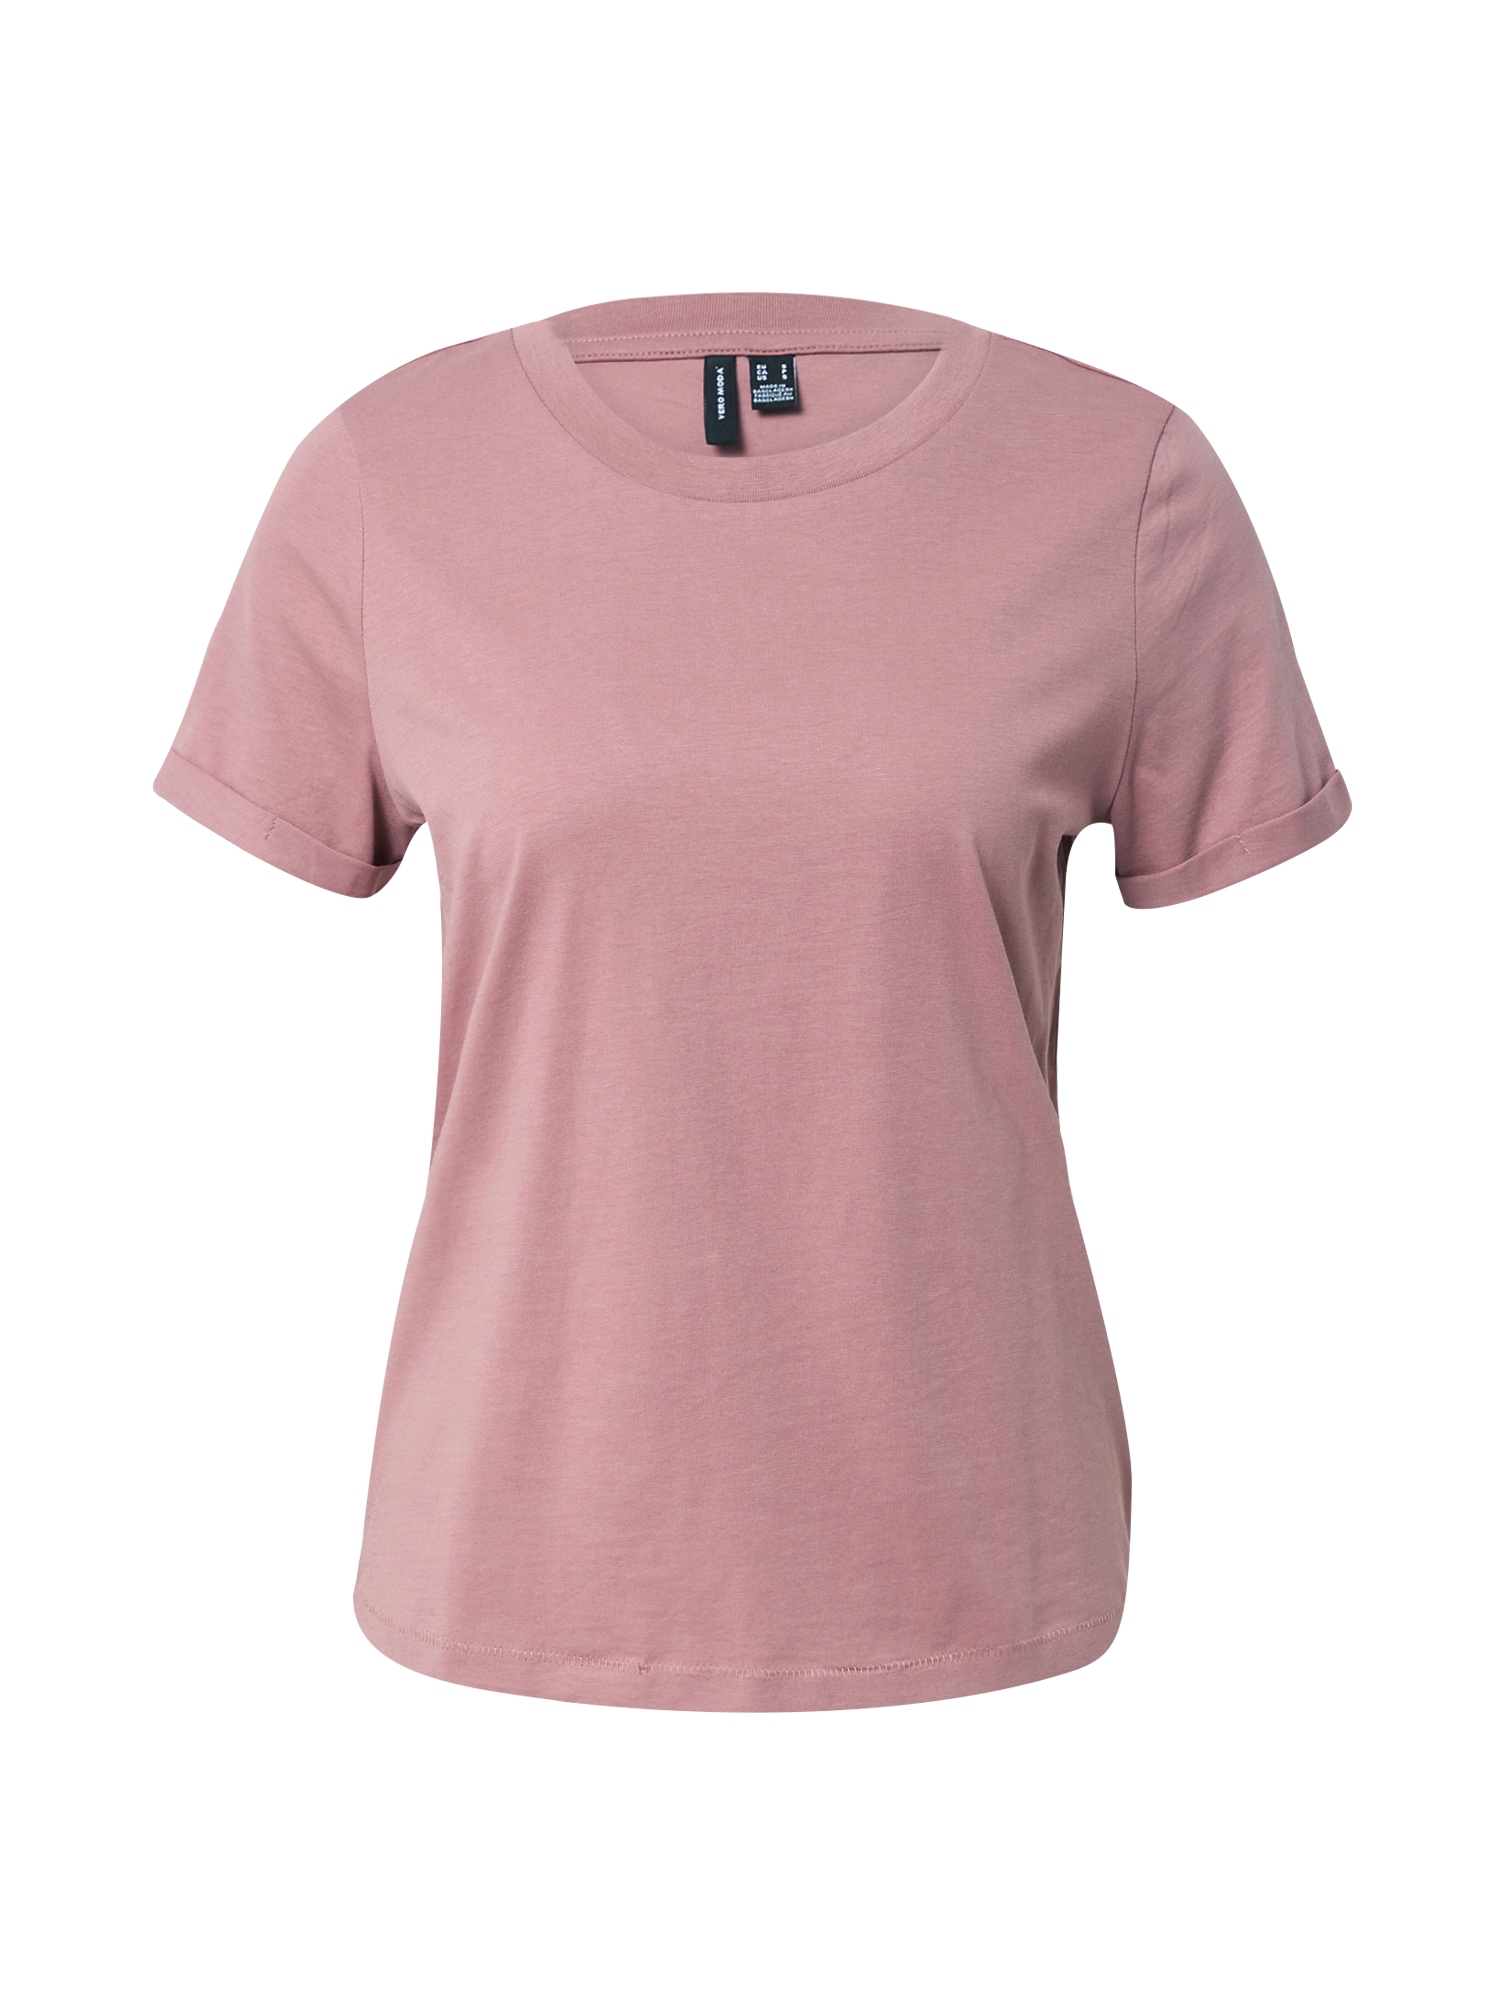 VERO MODA Marškinėliai 'PAULA' ryškiai rožinė spalva